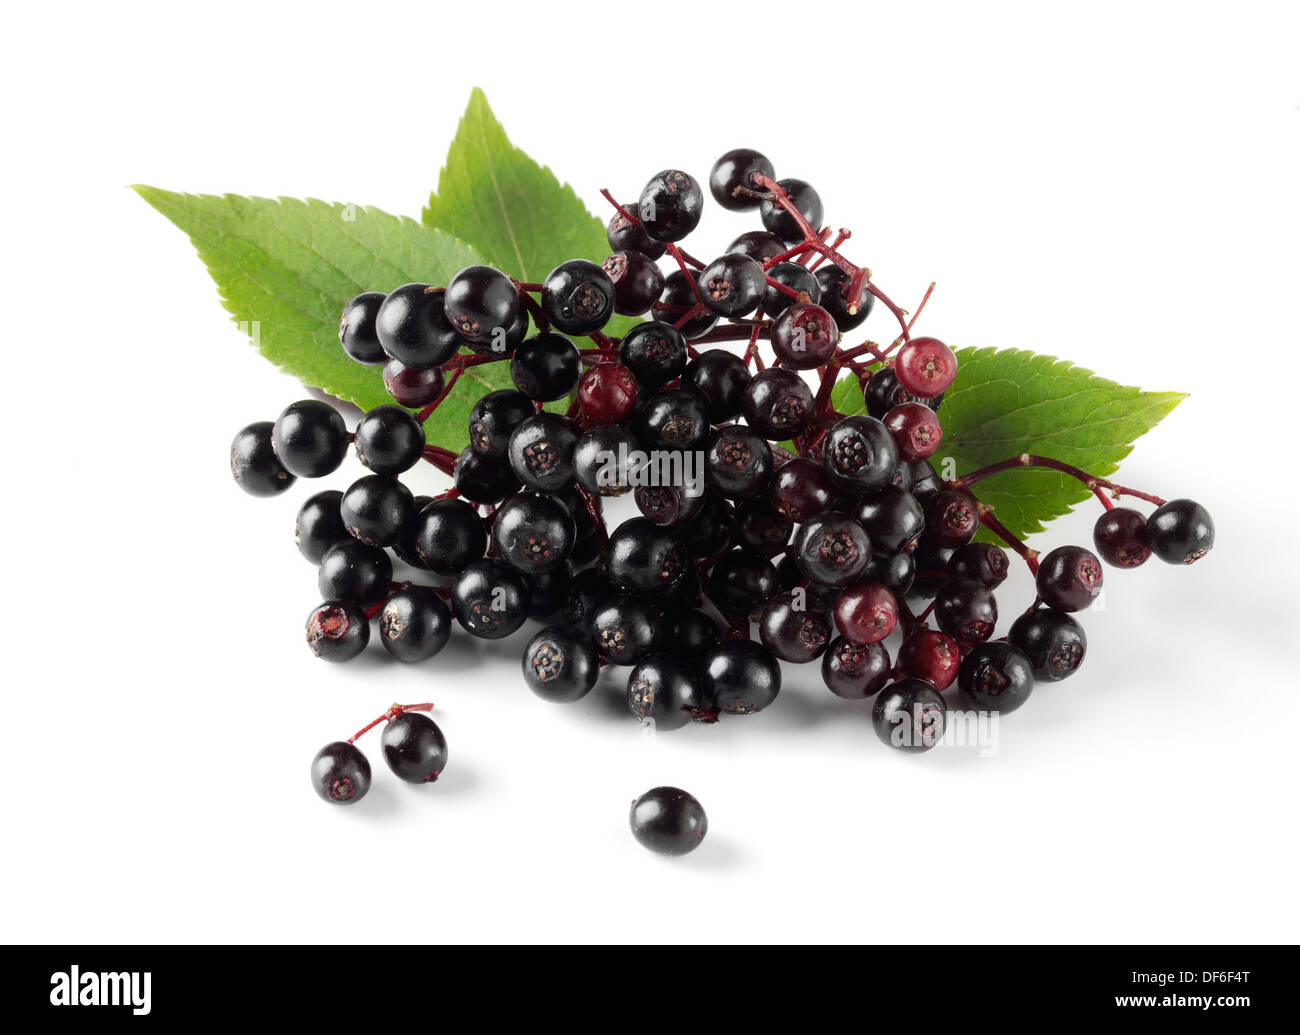 Frisch gepflückt elder oder Holunder Beeren Früchte mit Blättern (Sambucus) vor einem weißen Hintergrund Stockfoto